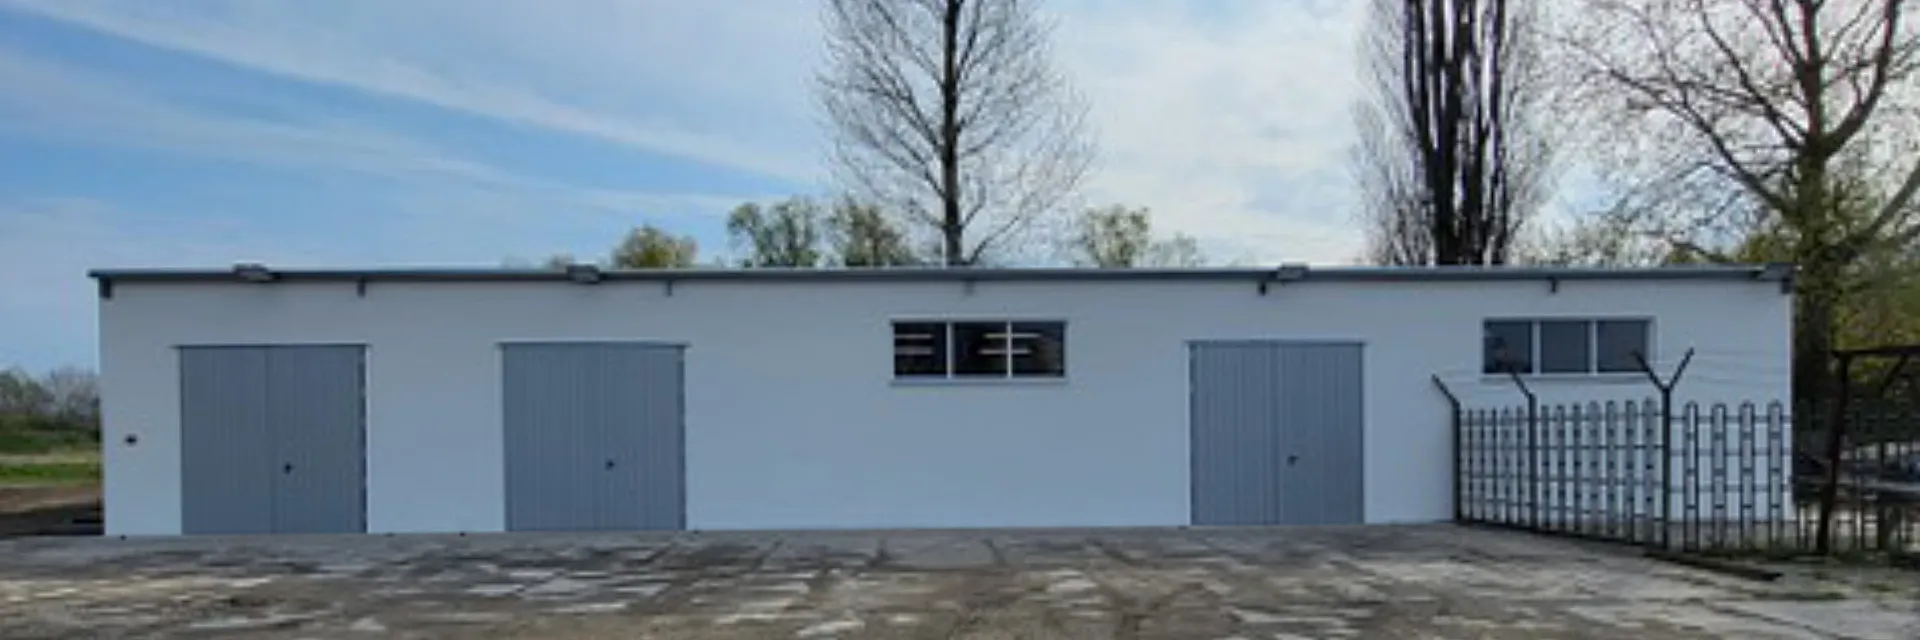 Budowa budynek garażowo-magazynowy wraz z niezbędną infrastrukturą techniczną w Policach k. Szczecina